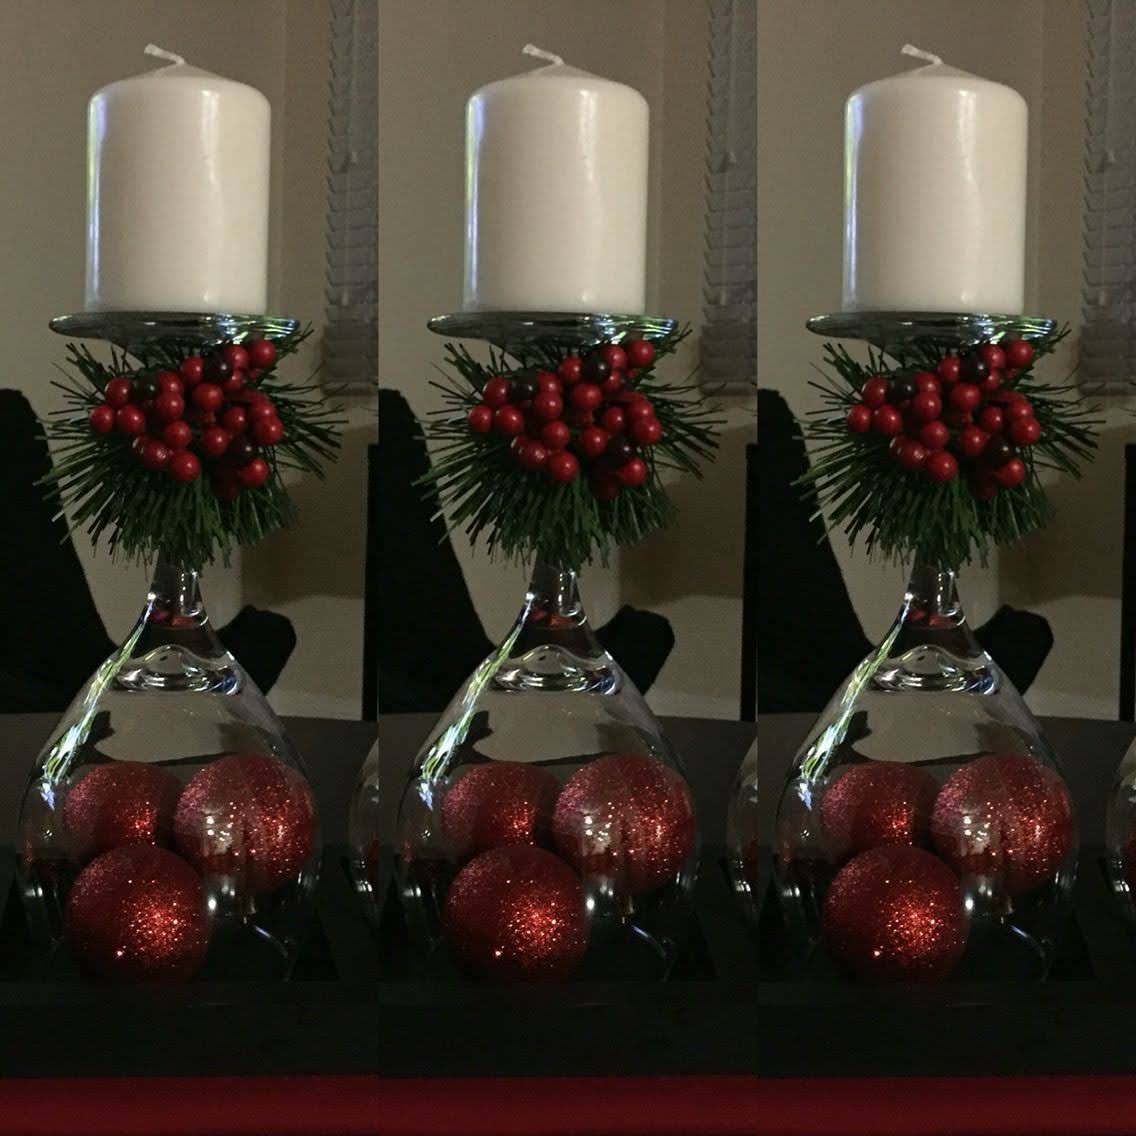 Centro de mesa simples com taças para decorar no Natal